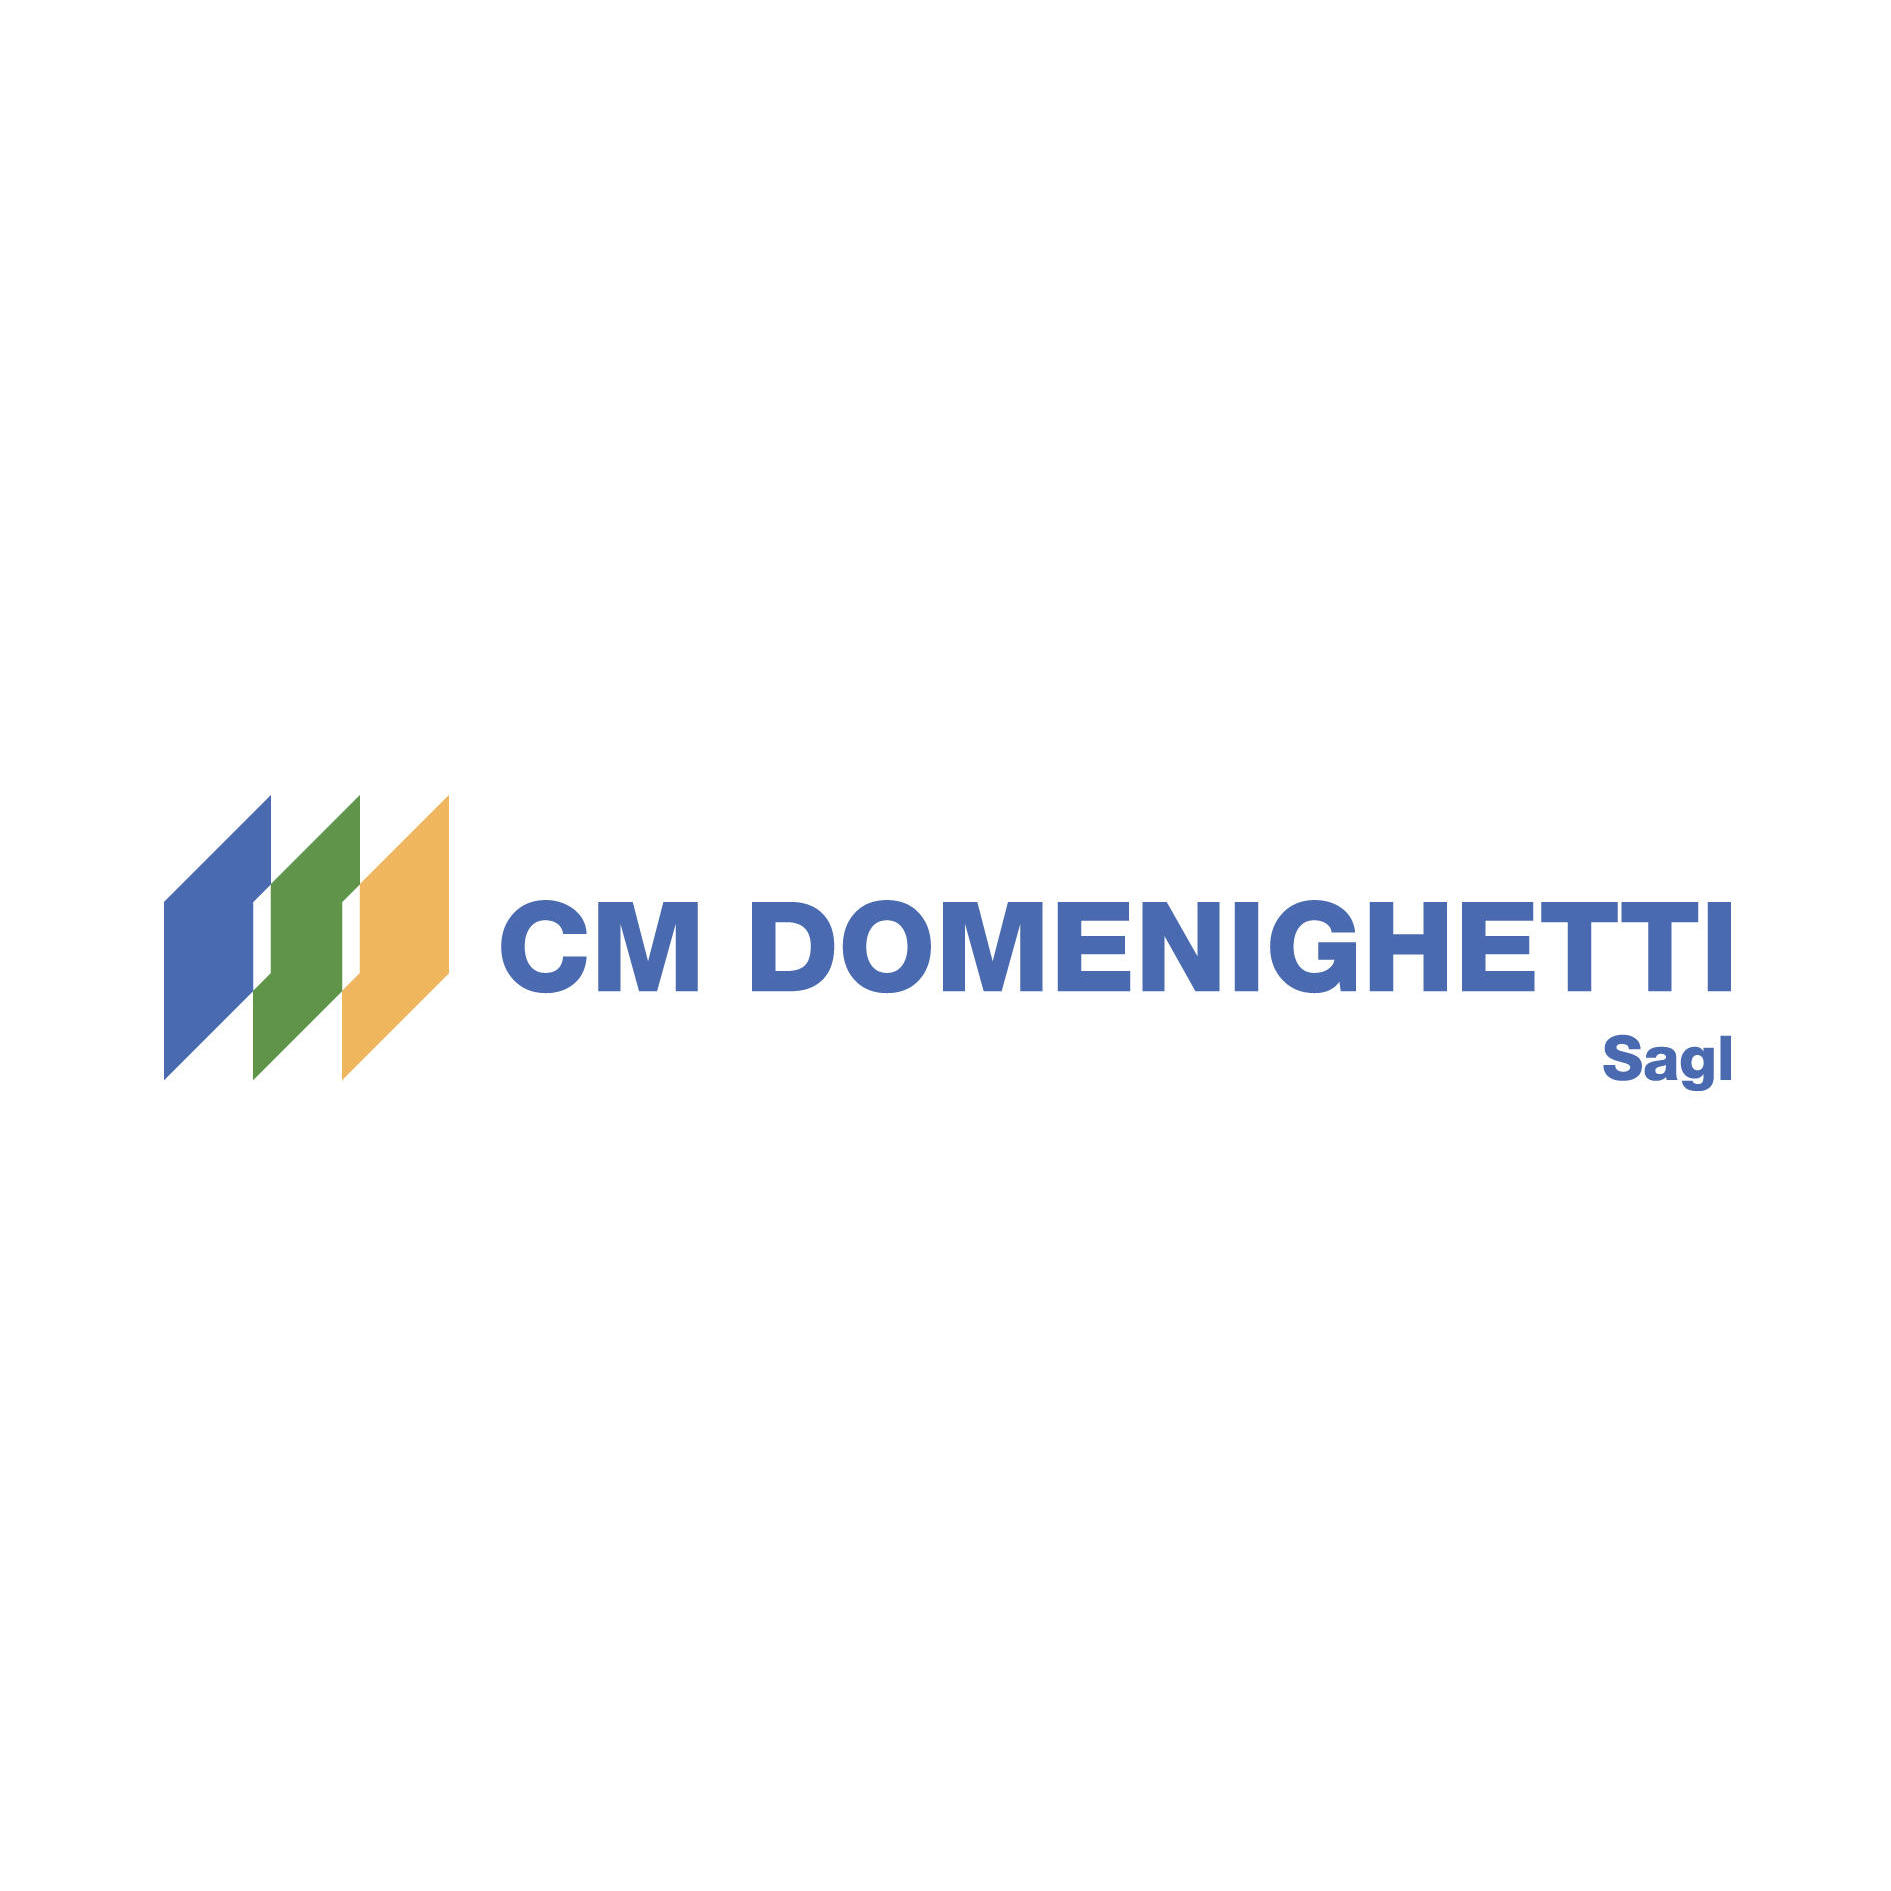 CM DOMENIGHETTI Sagl Logo